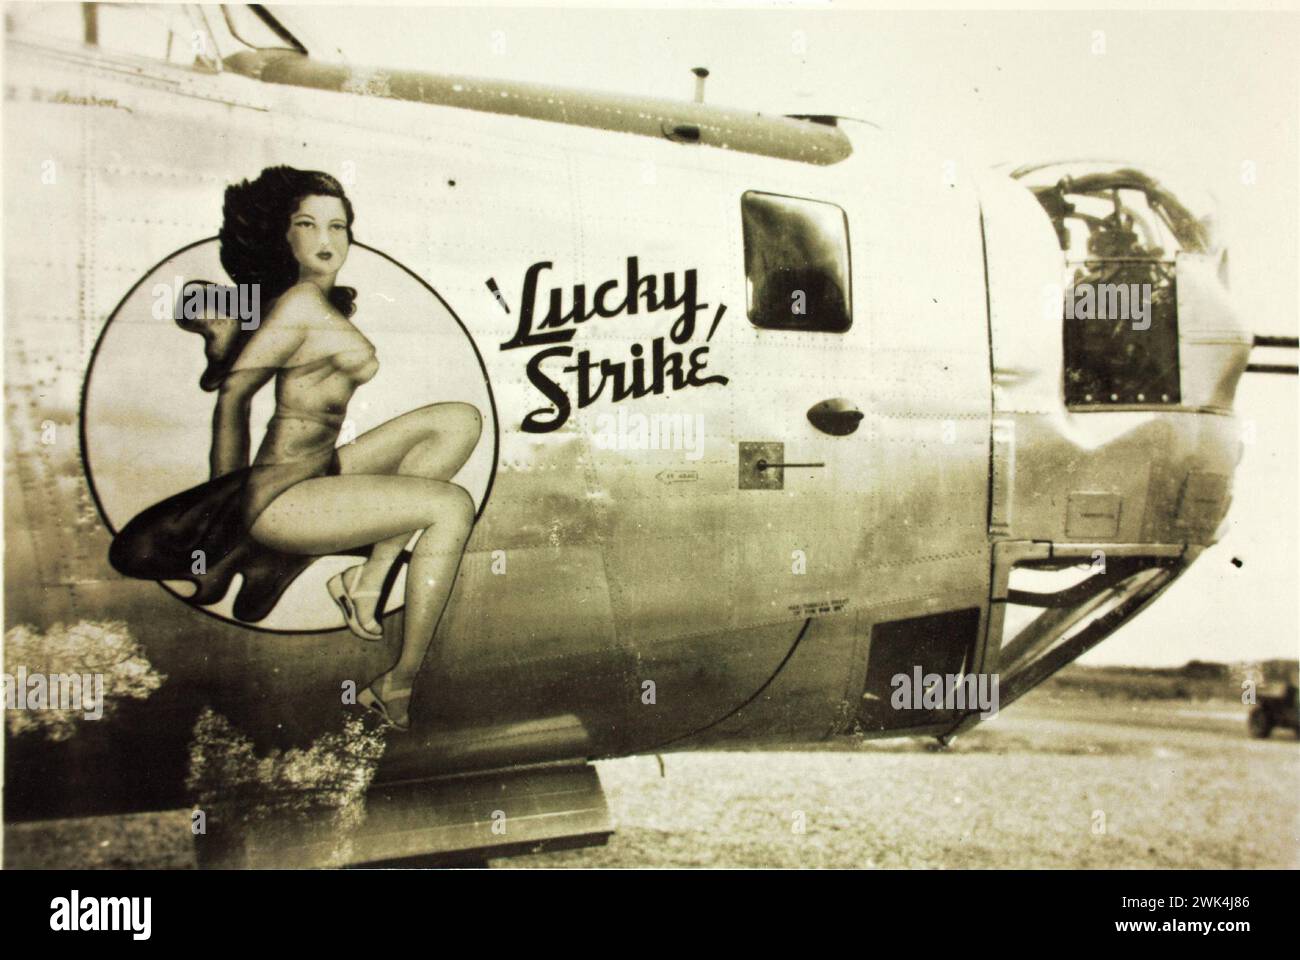 Vorderseite eines 380th Bomb Group Consolidated B-24 Liberator Militärflugzeugs, mit einem "Lucky Strike" und einer Frau auf dem Rumpf gemalt. Vintage-Foto 1940er Jahre Stockfoto